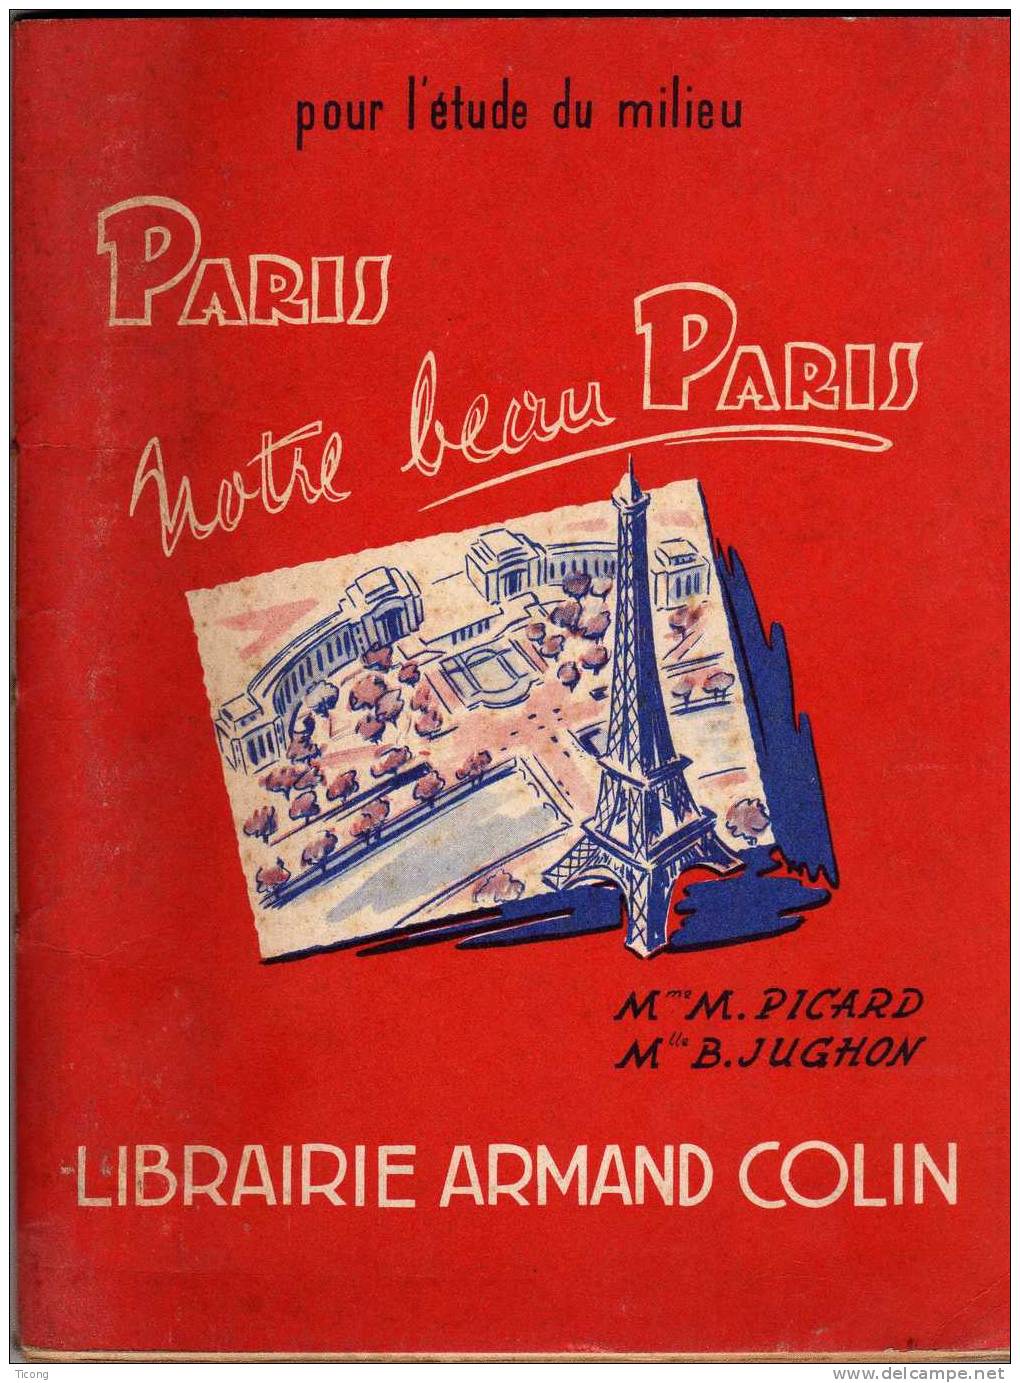 PARIS NOTRE BEAU PARIS - PICARD ET JUGHON - ILLUSTRATIONS DE JP MAURIN - 1ERE EDITION ARMAND COLIN 1955 - 6-12 Ans